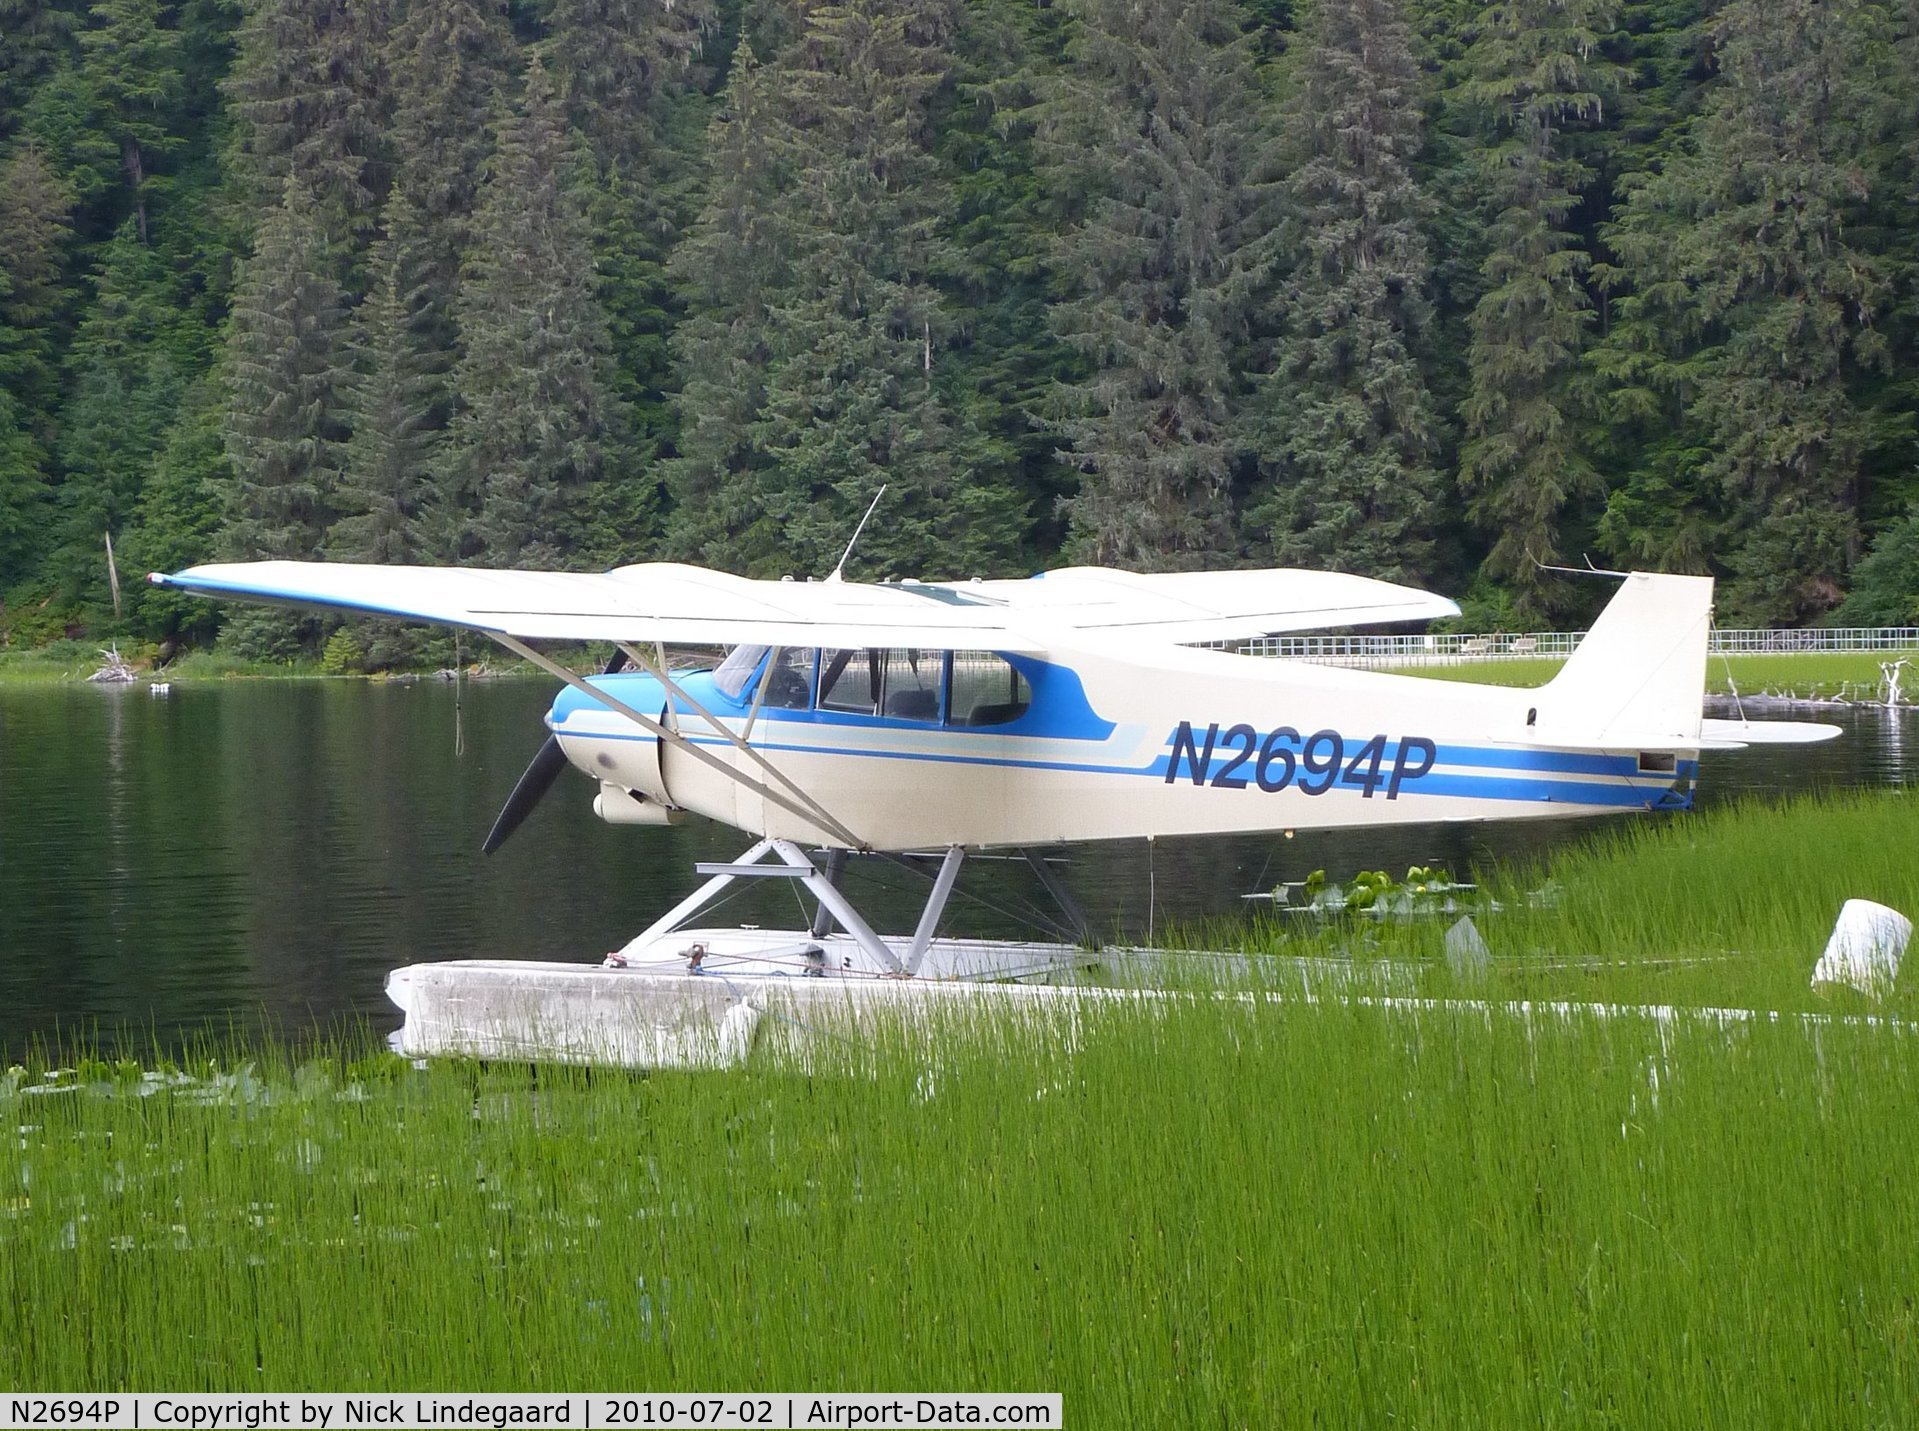 N2694P, 1955 Piper PA-18A 150 Super Cub C/N 18-4382, N2694P on Auke Lake, near Juneau, Alaska.